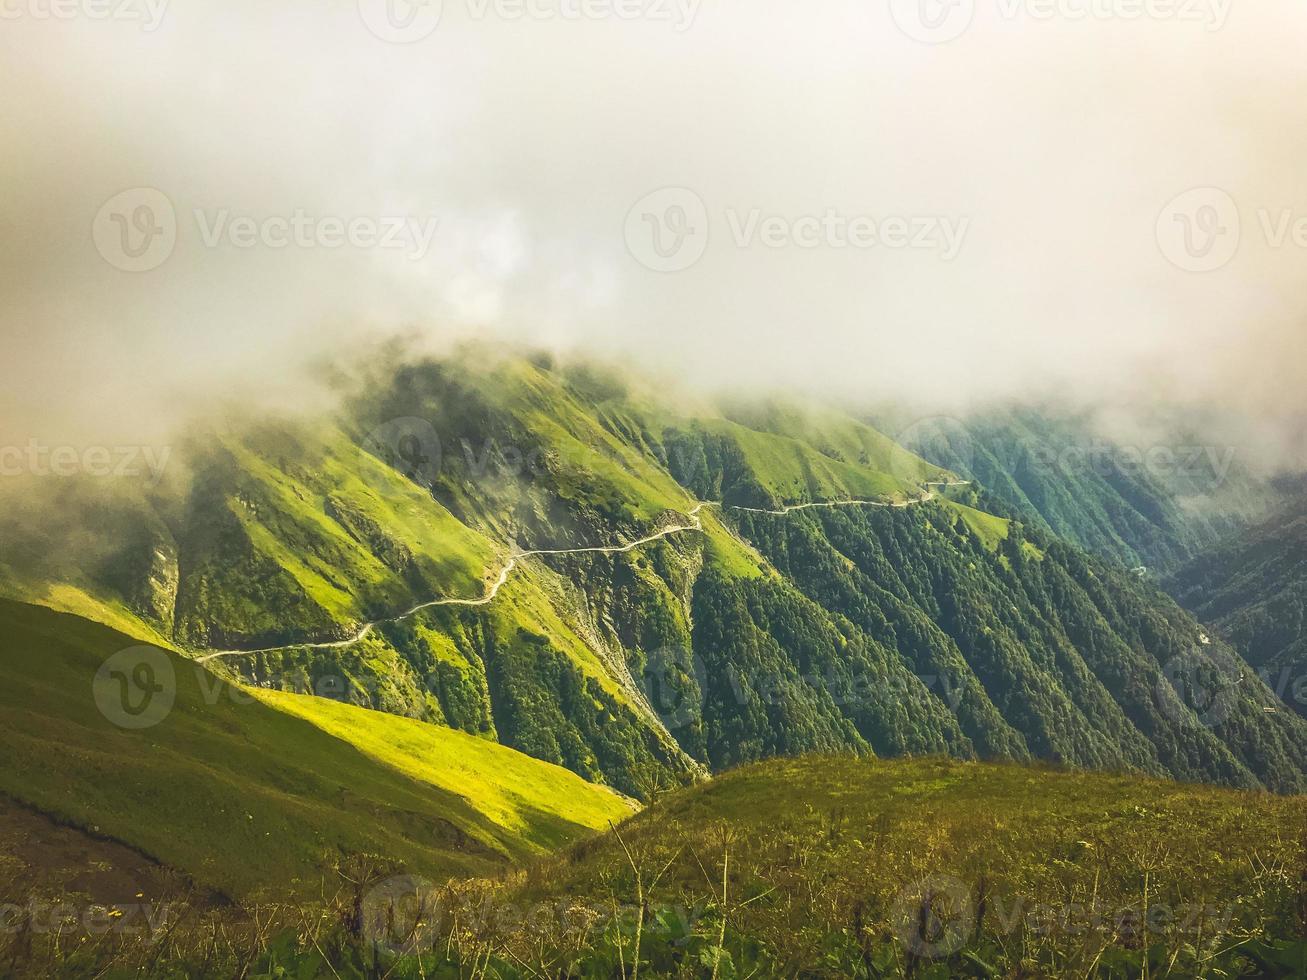 filmisch verbluffend tusheti-wegpanorama met mist en groen landschap. Georgische extreme tours avontuurlijke reizen foto